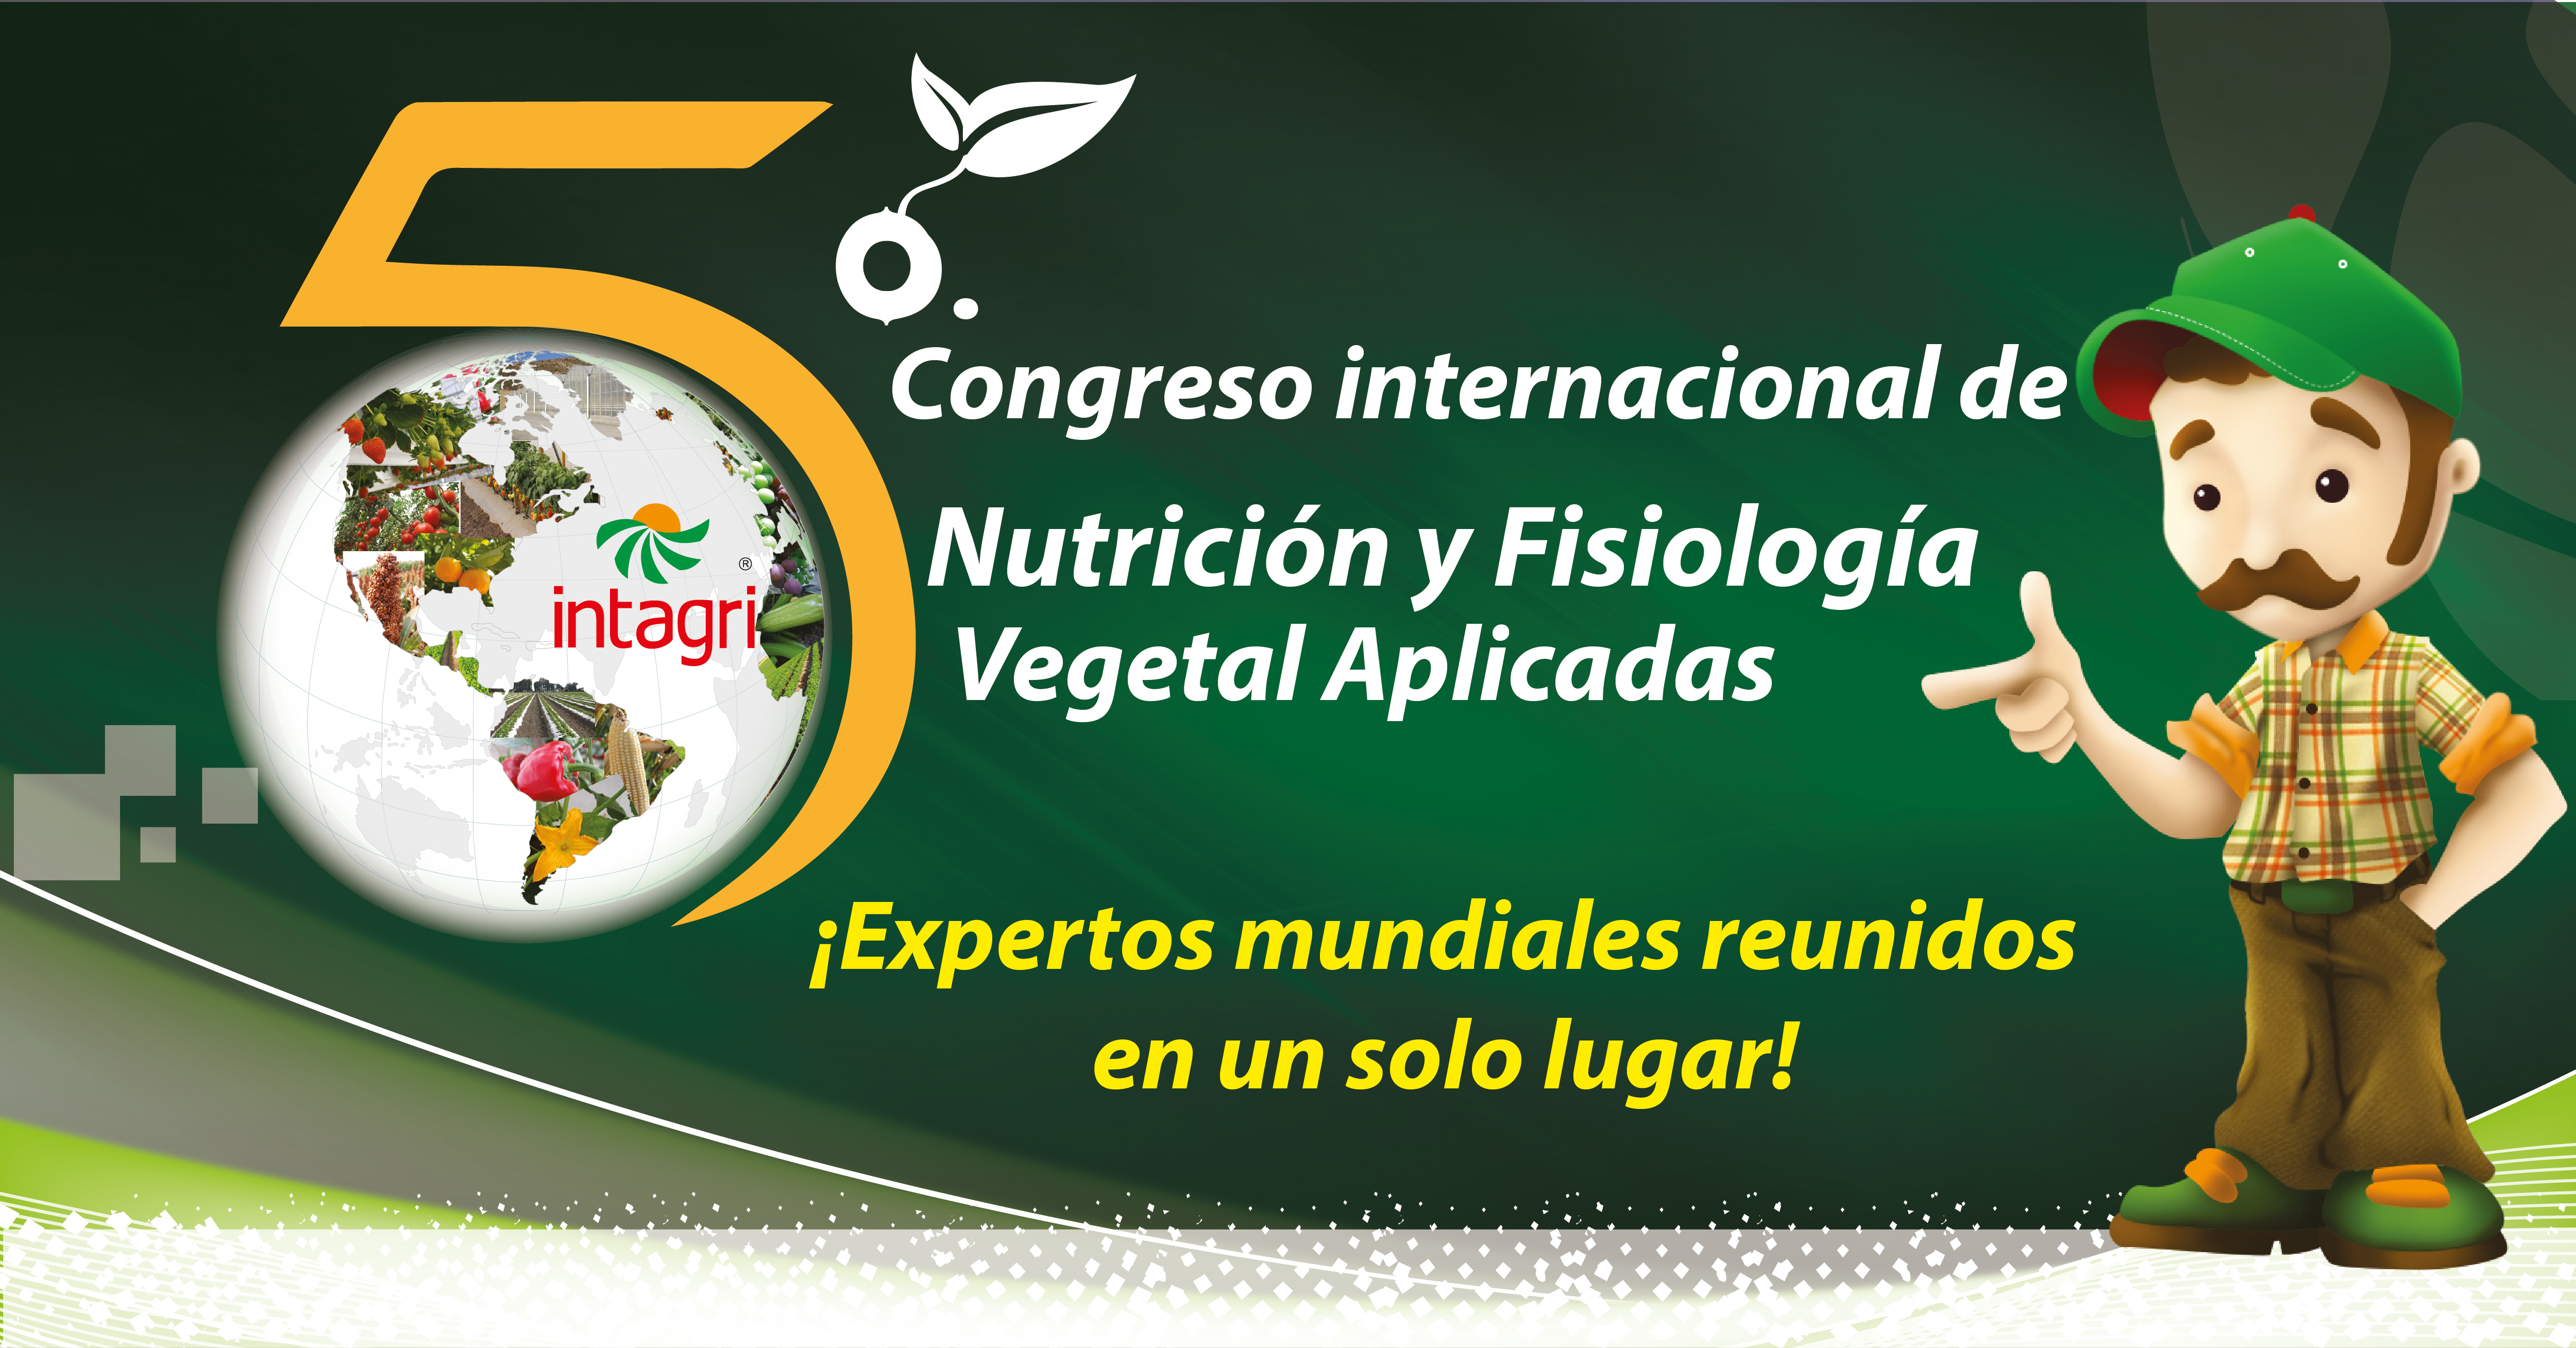 5to Congreso Internacional de Nutricion y Fisiologia Vegetal